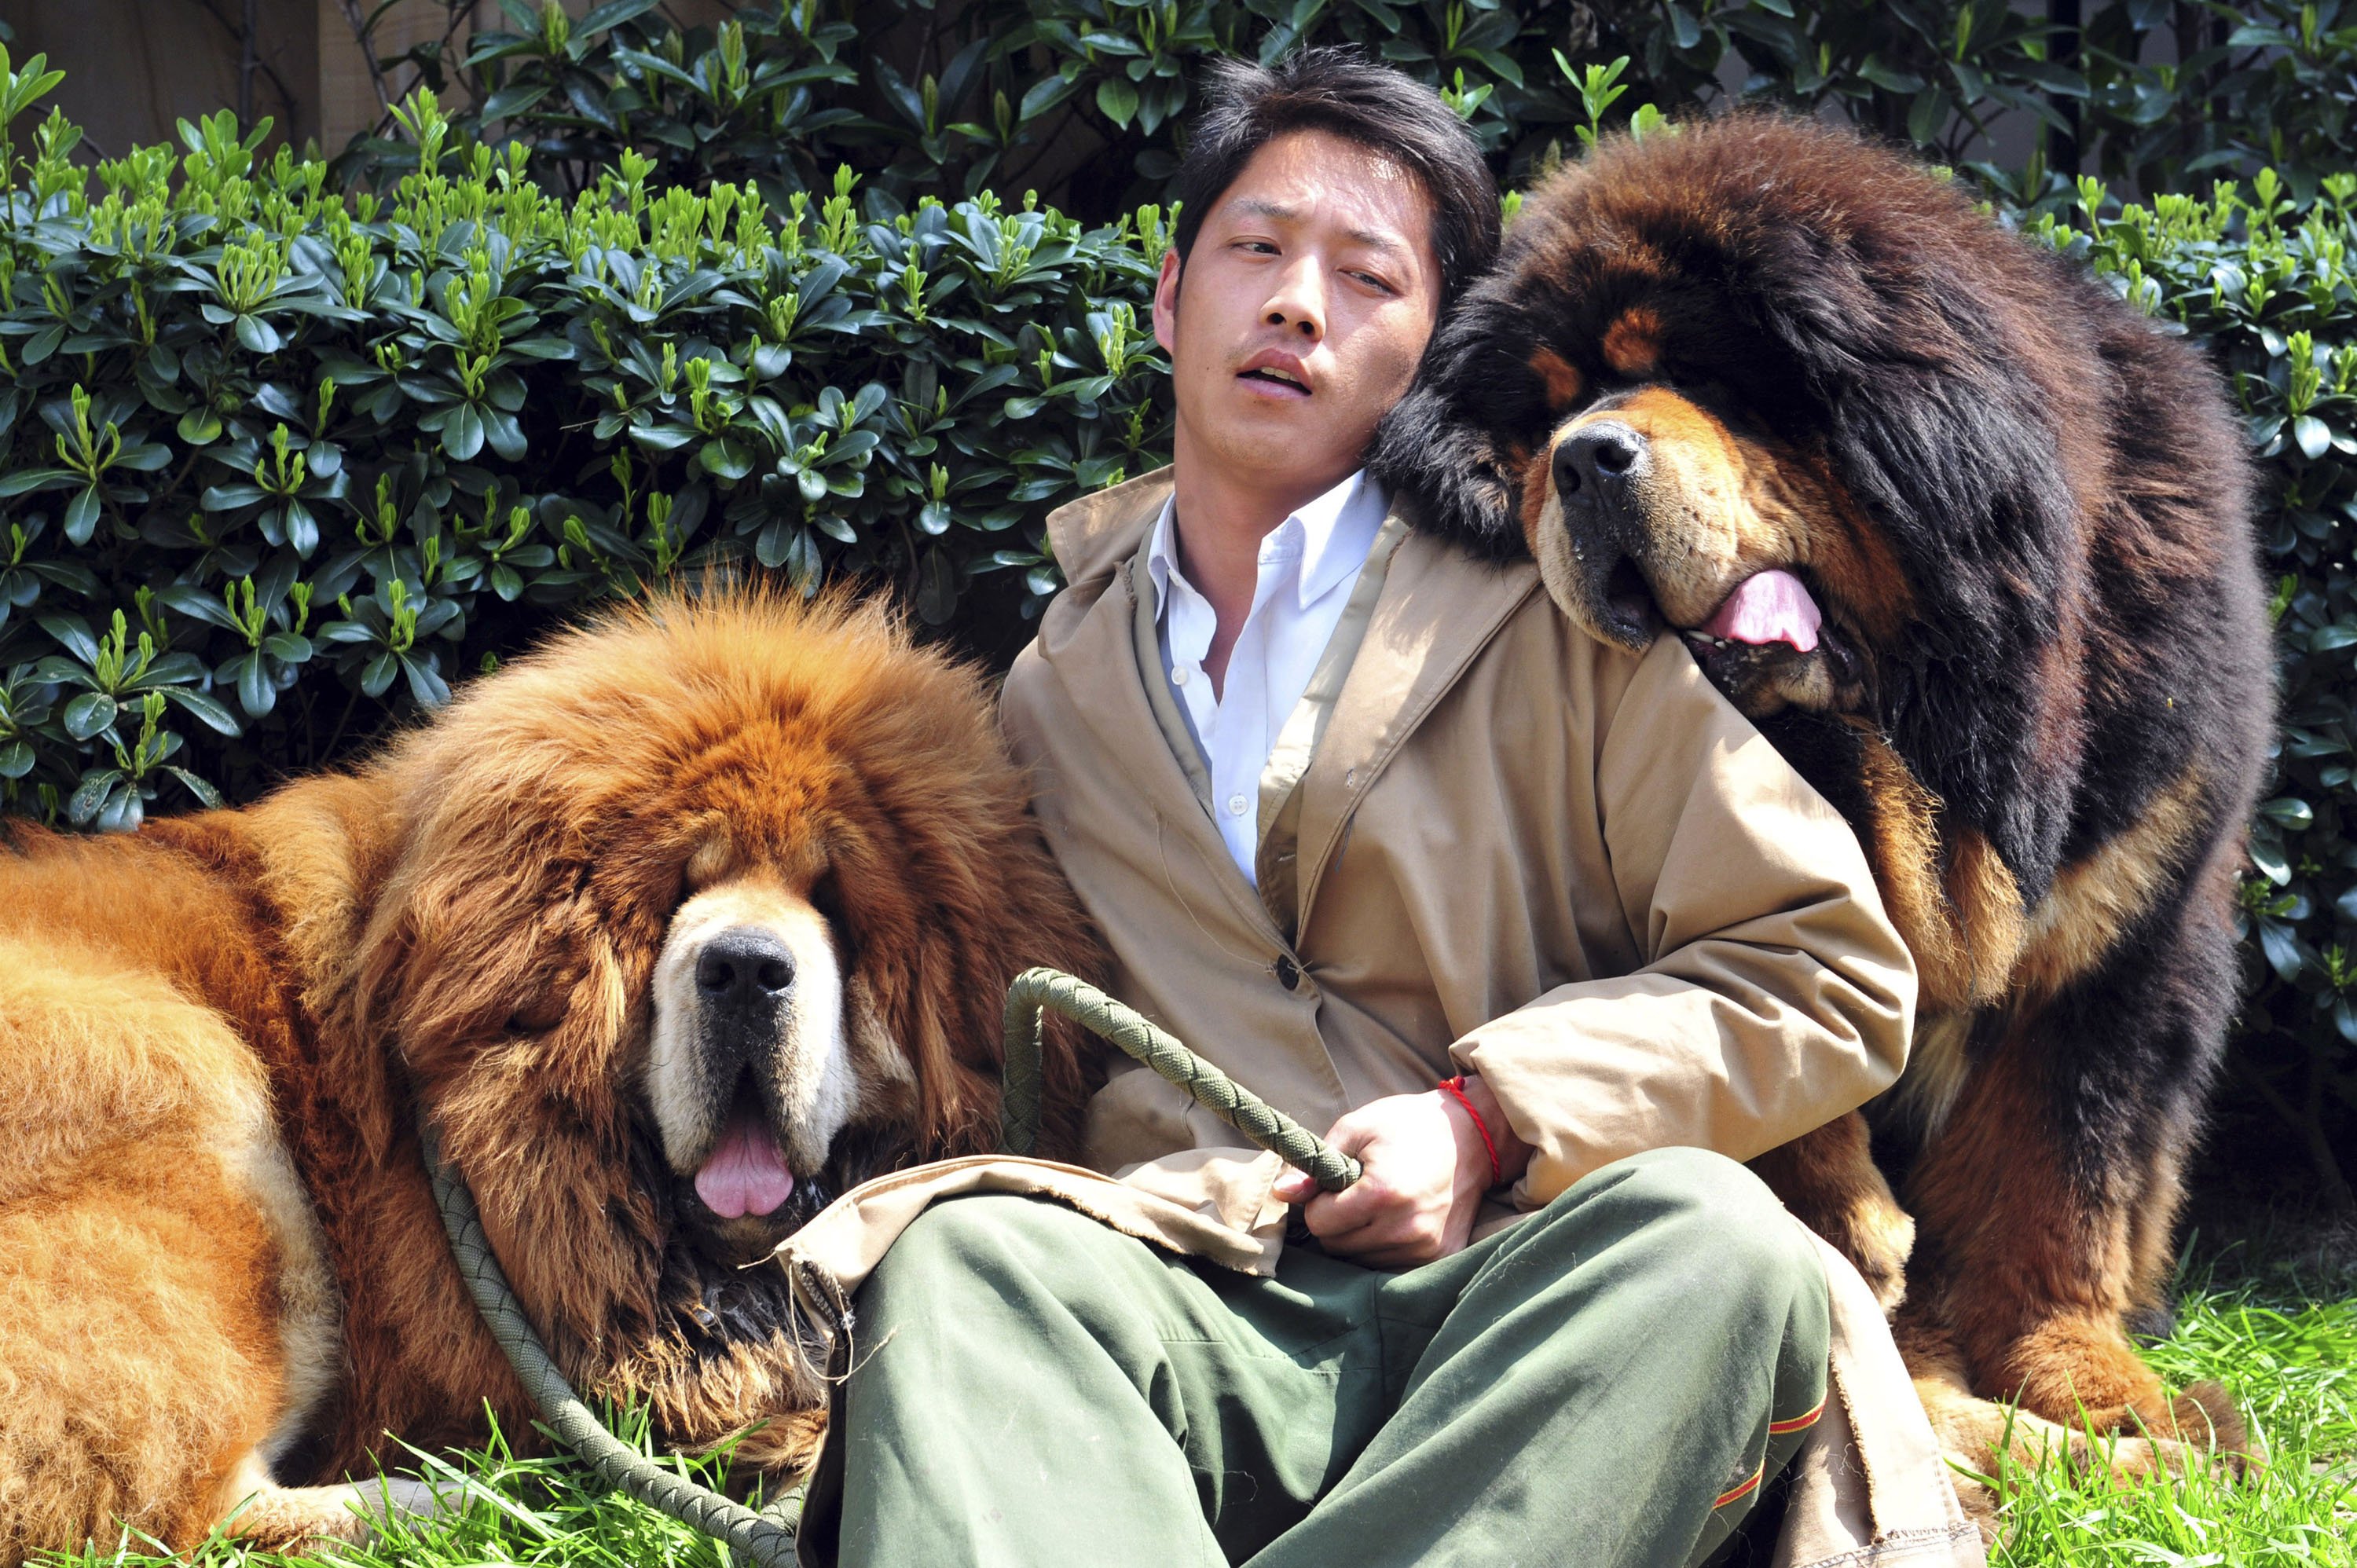 does the tibetan mastiff love children